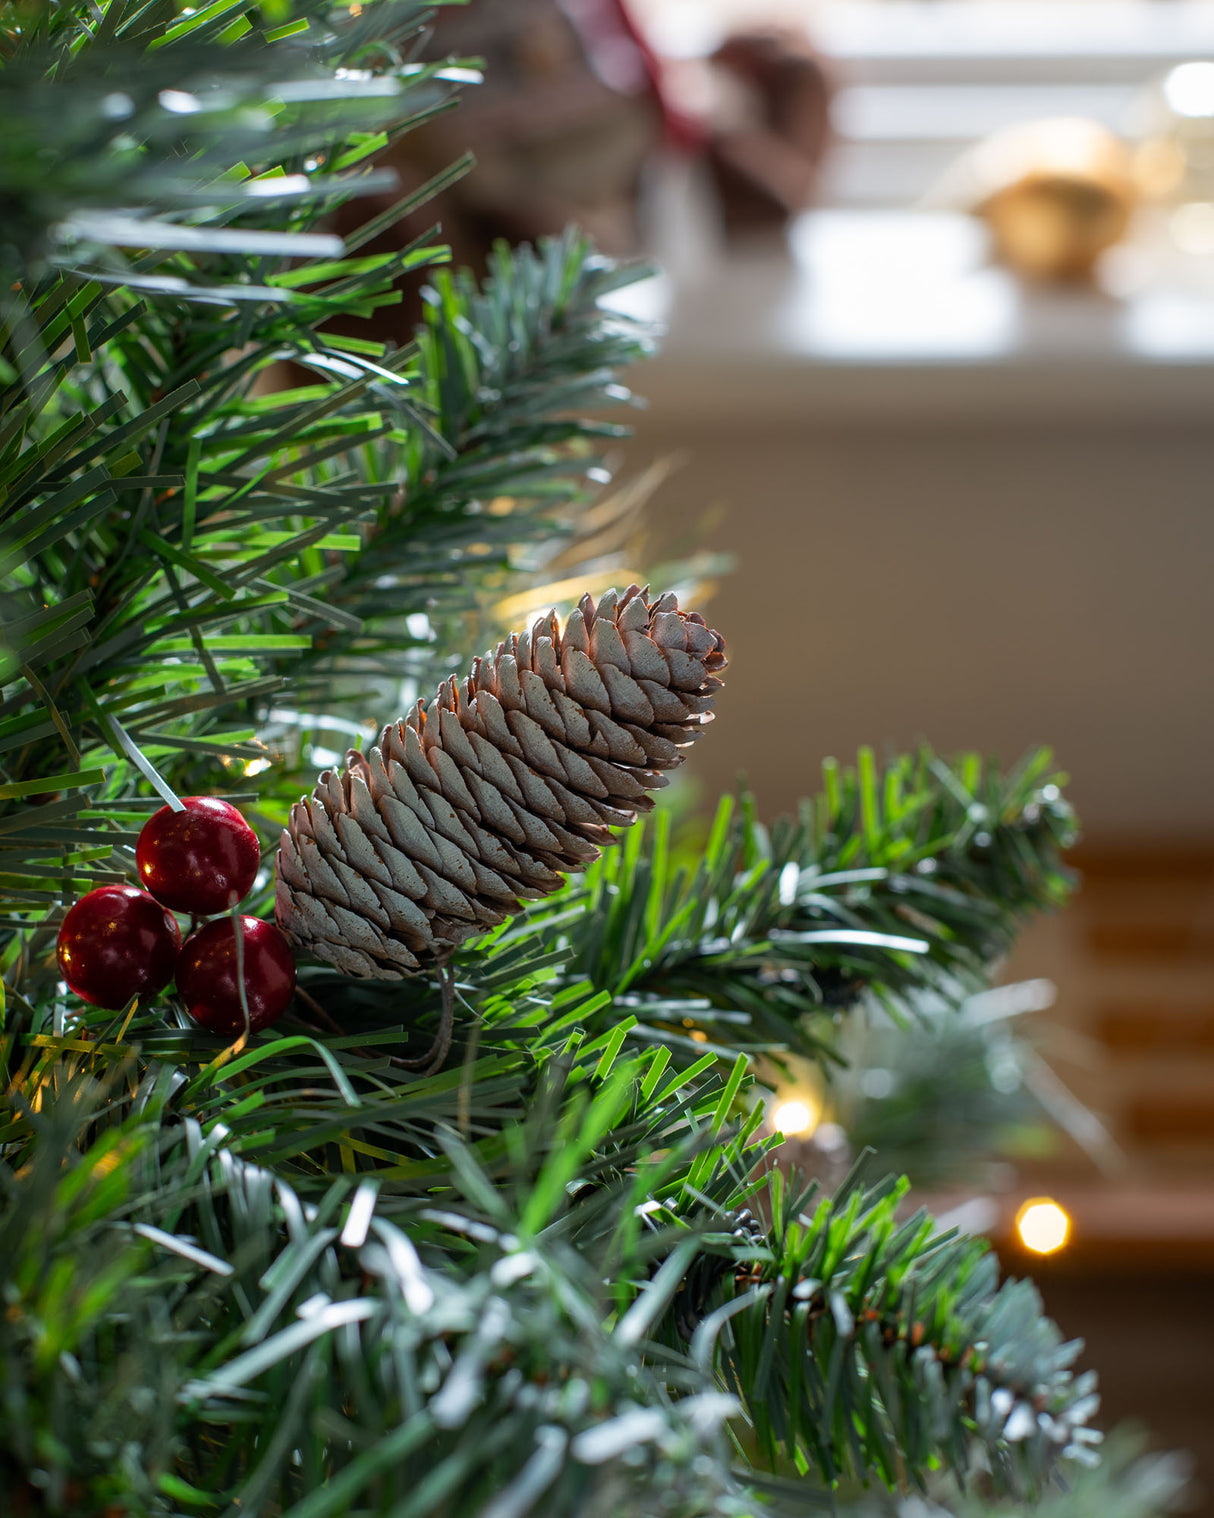 Pre-Lit Scandinavian Spruce Pinecones & Berries Christmas Tree